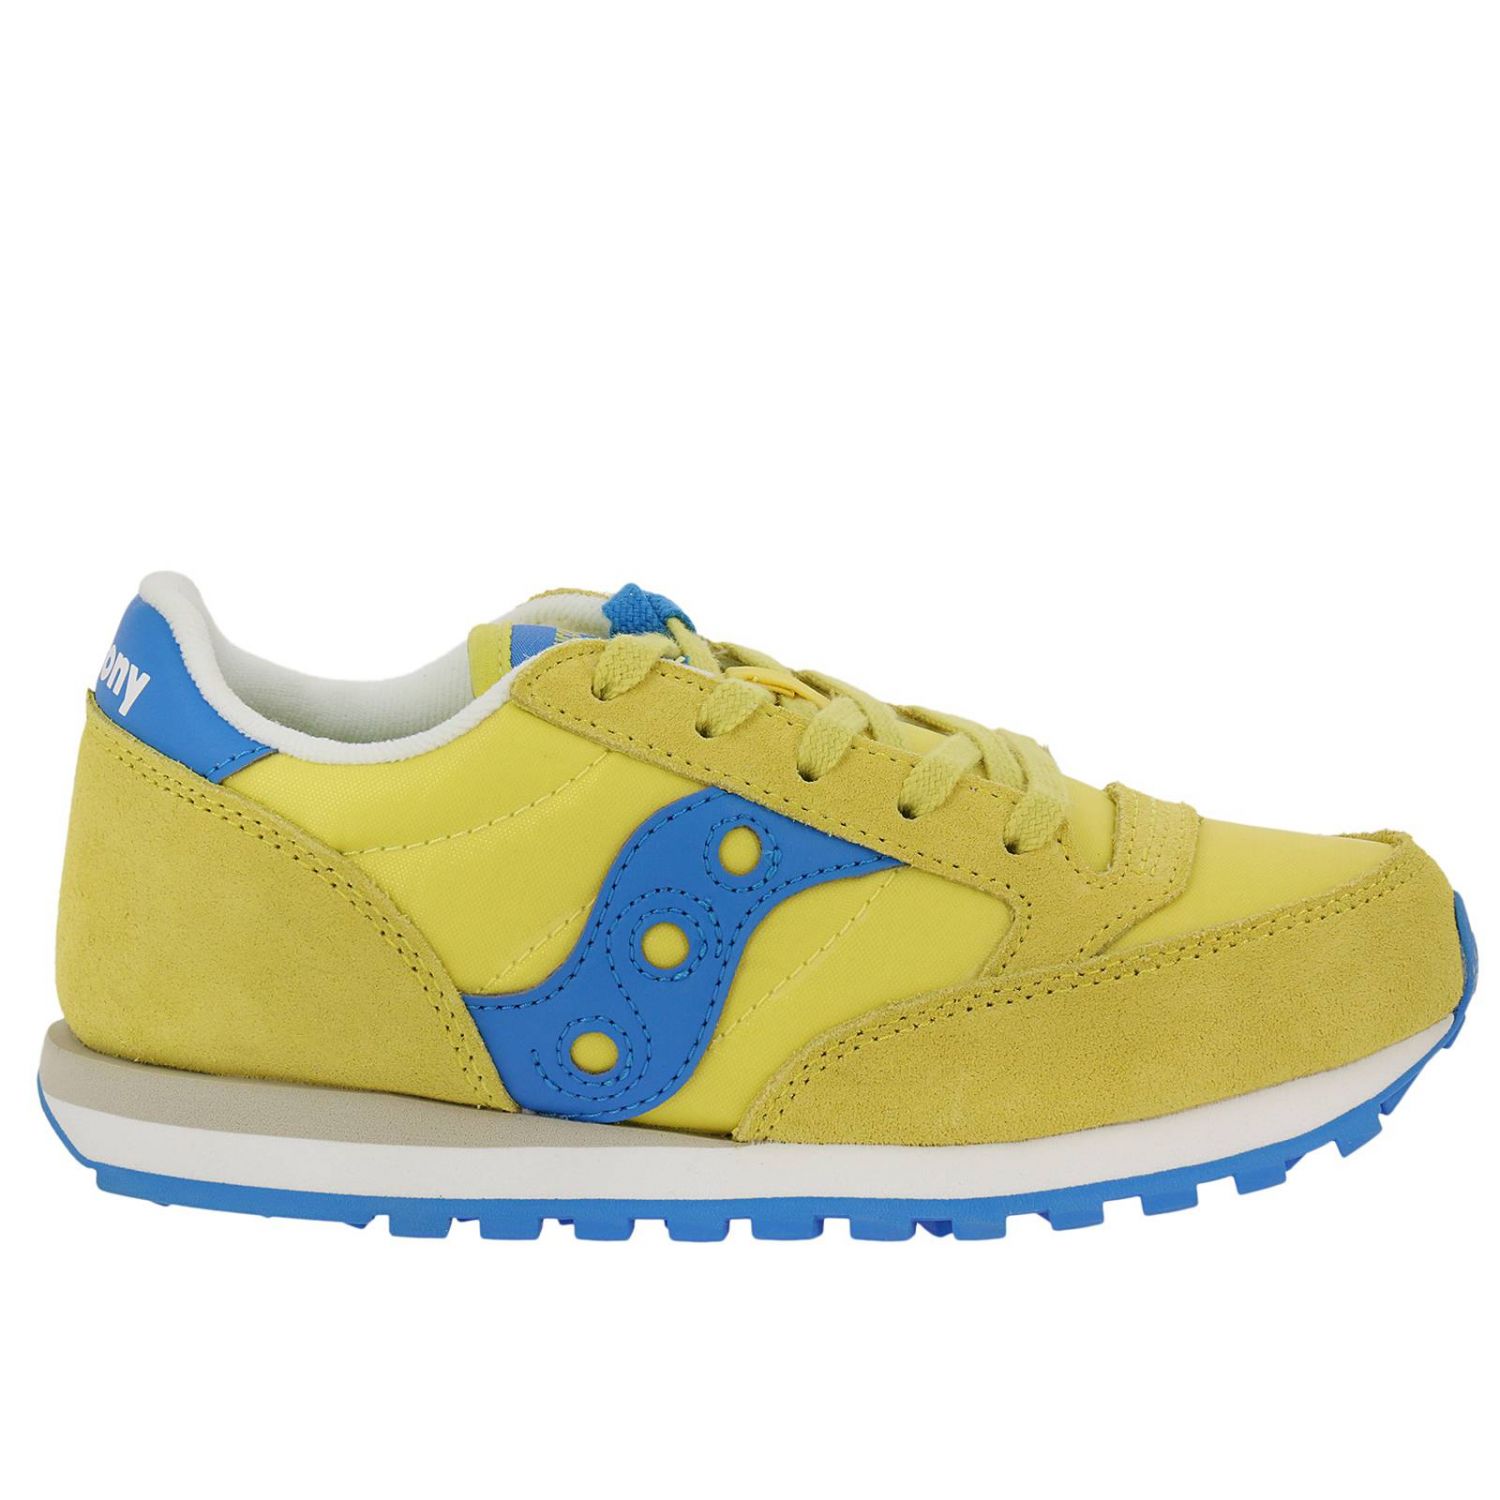 buy saucony running shoes online